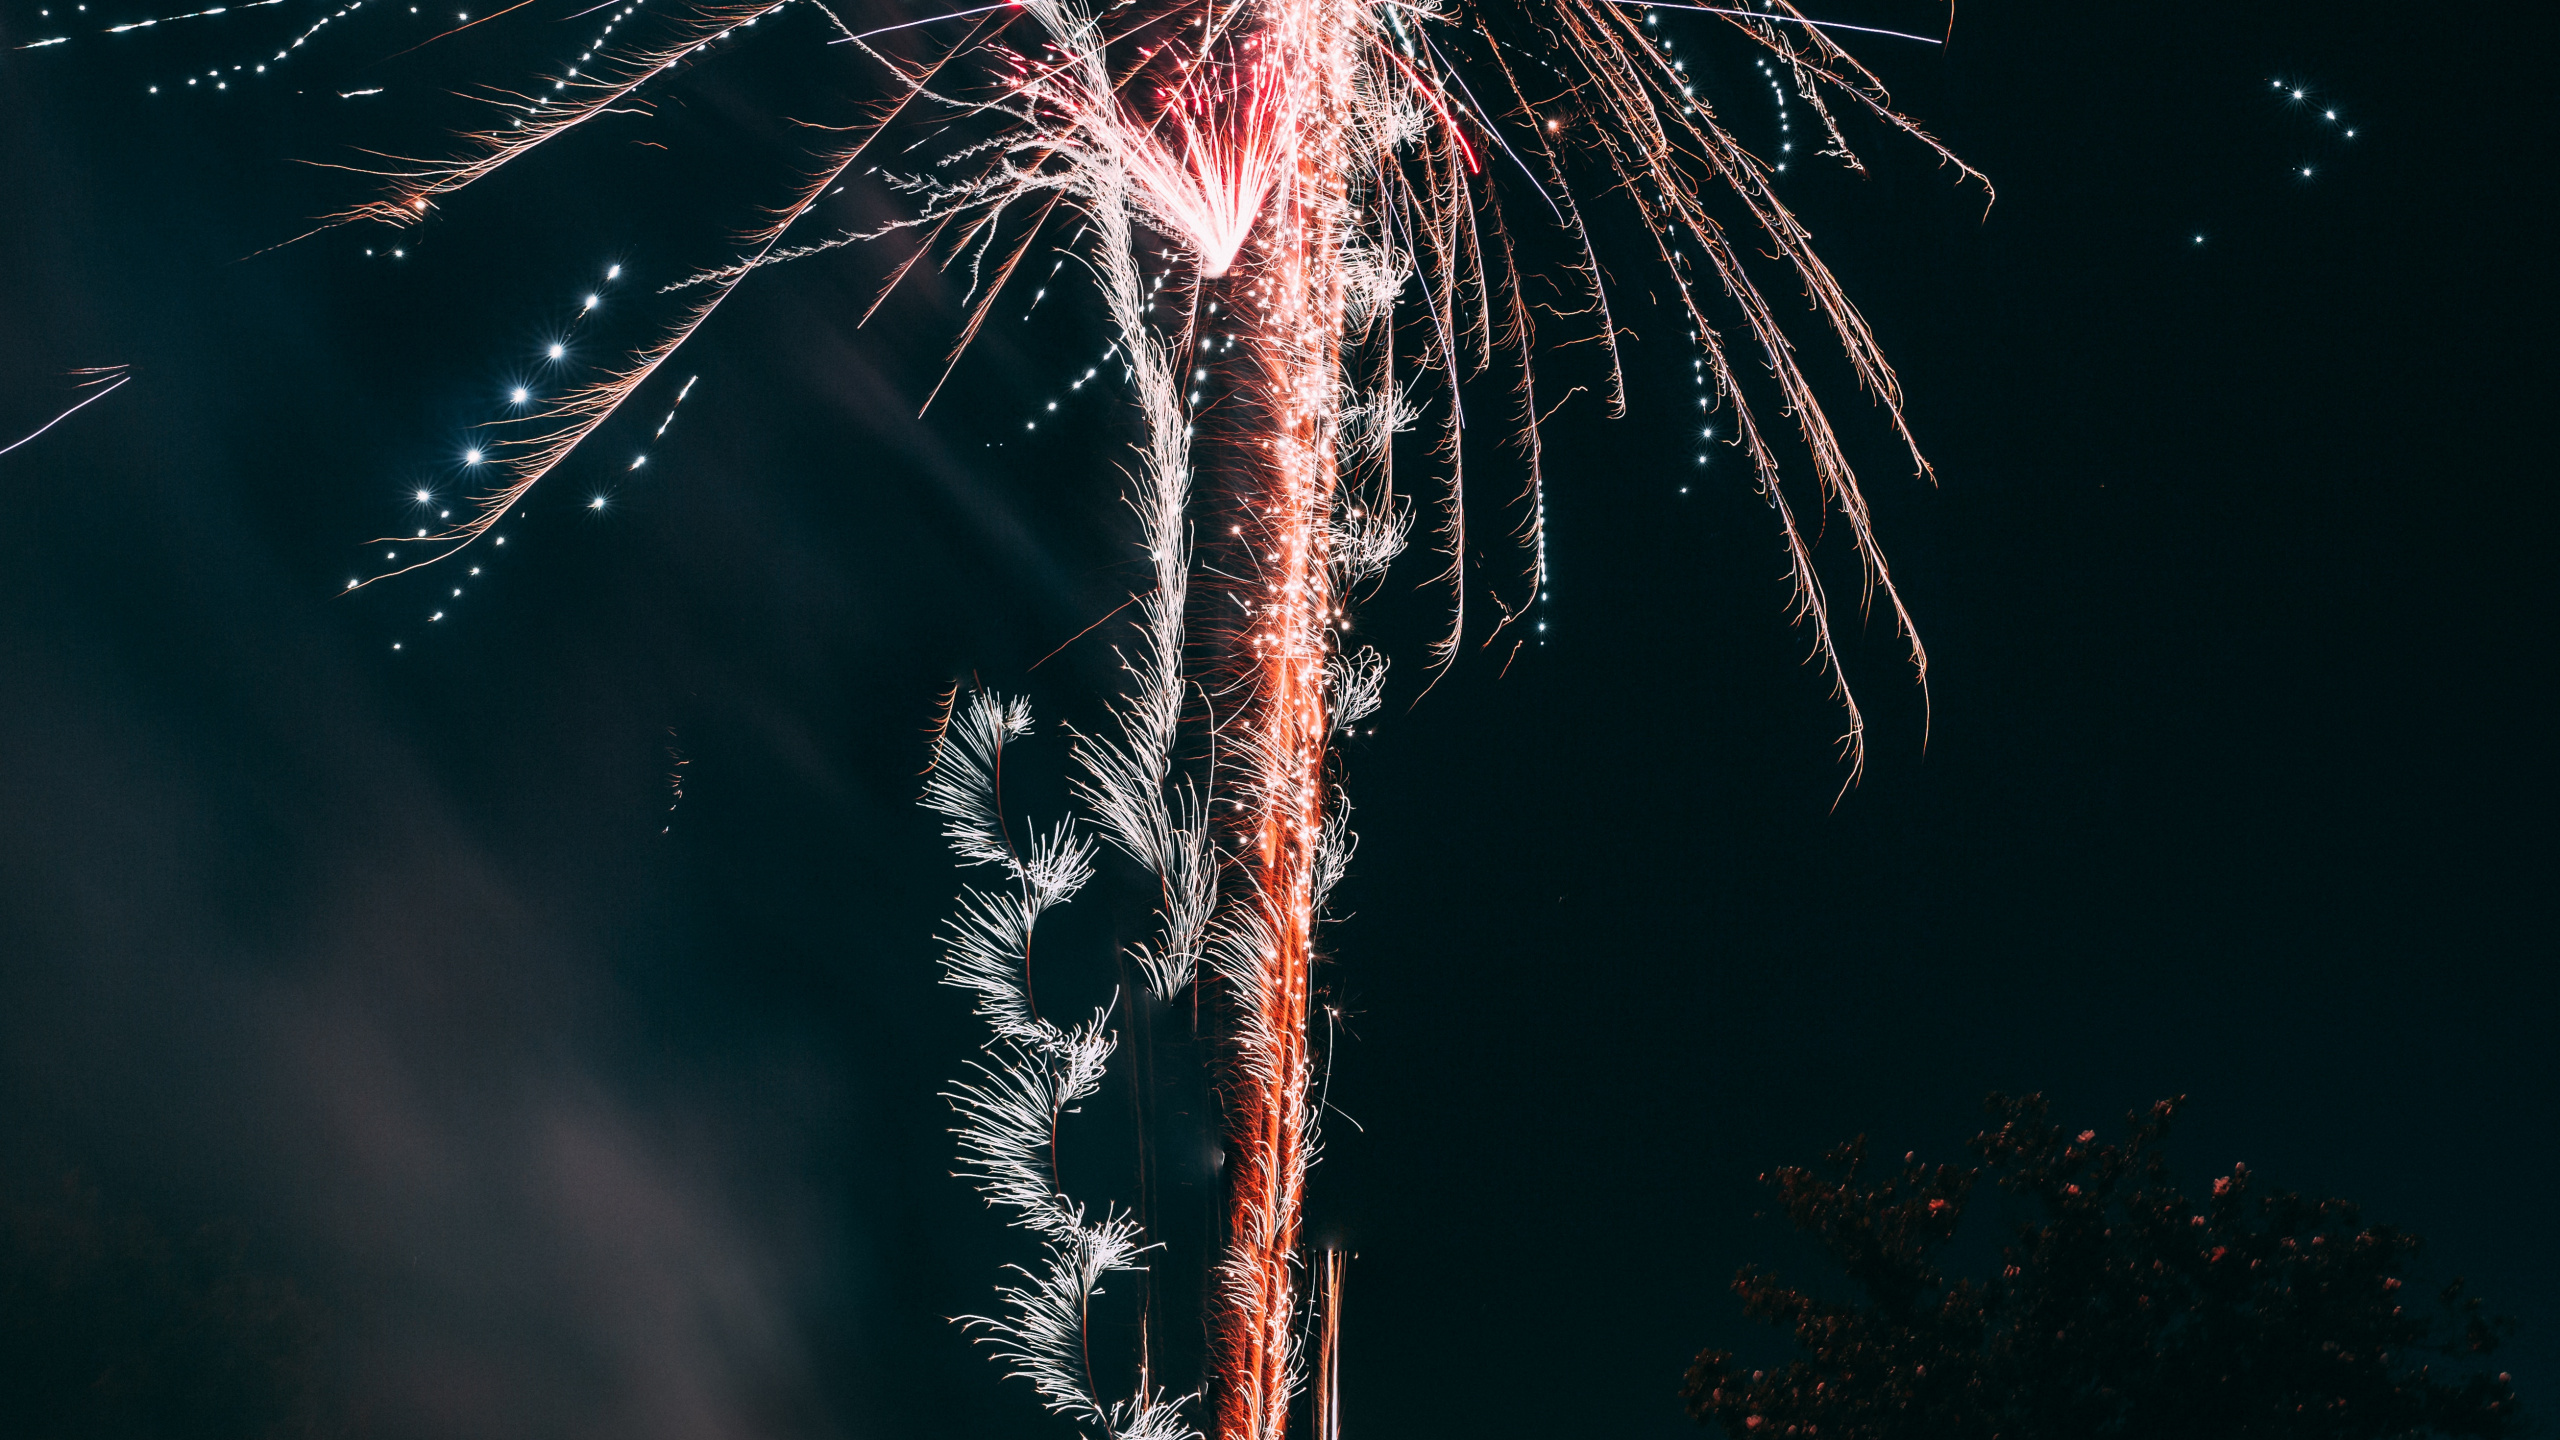 Feuerwerk, Neue Jahre Tag, Nacht, Veranstaltung, Baum. Wallpaper in 2560x1440 Resolution